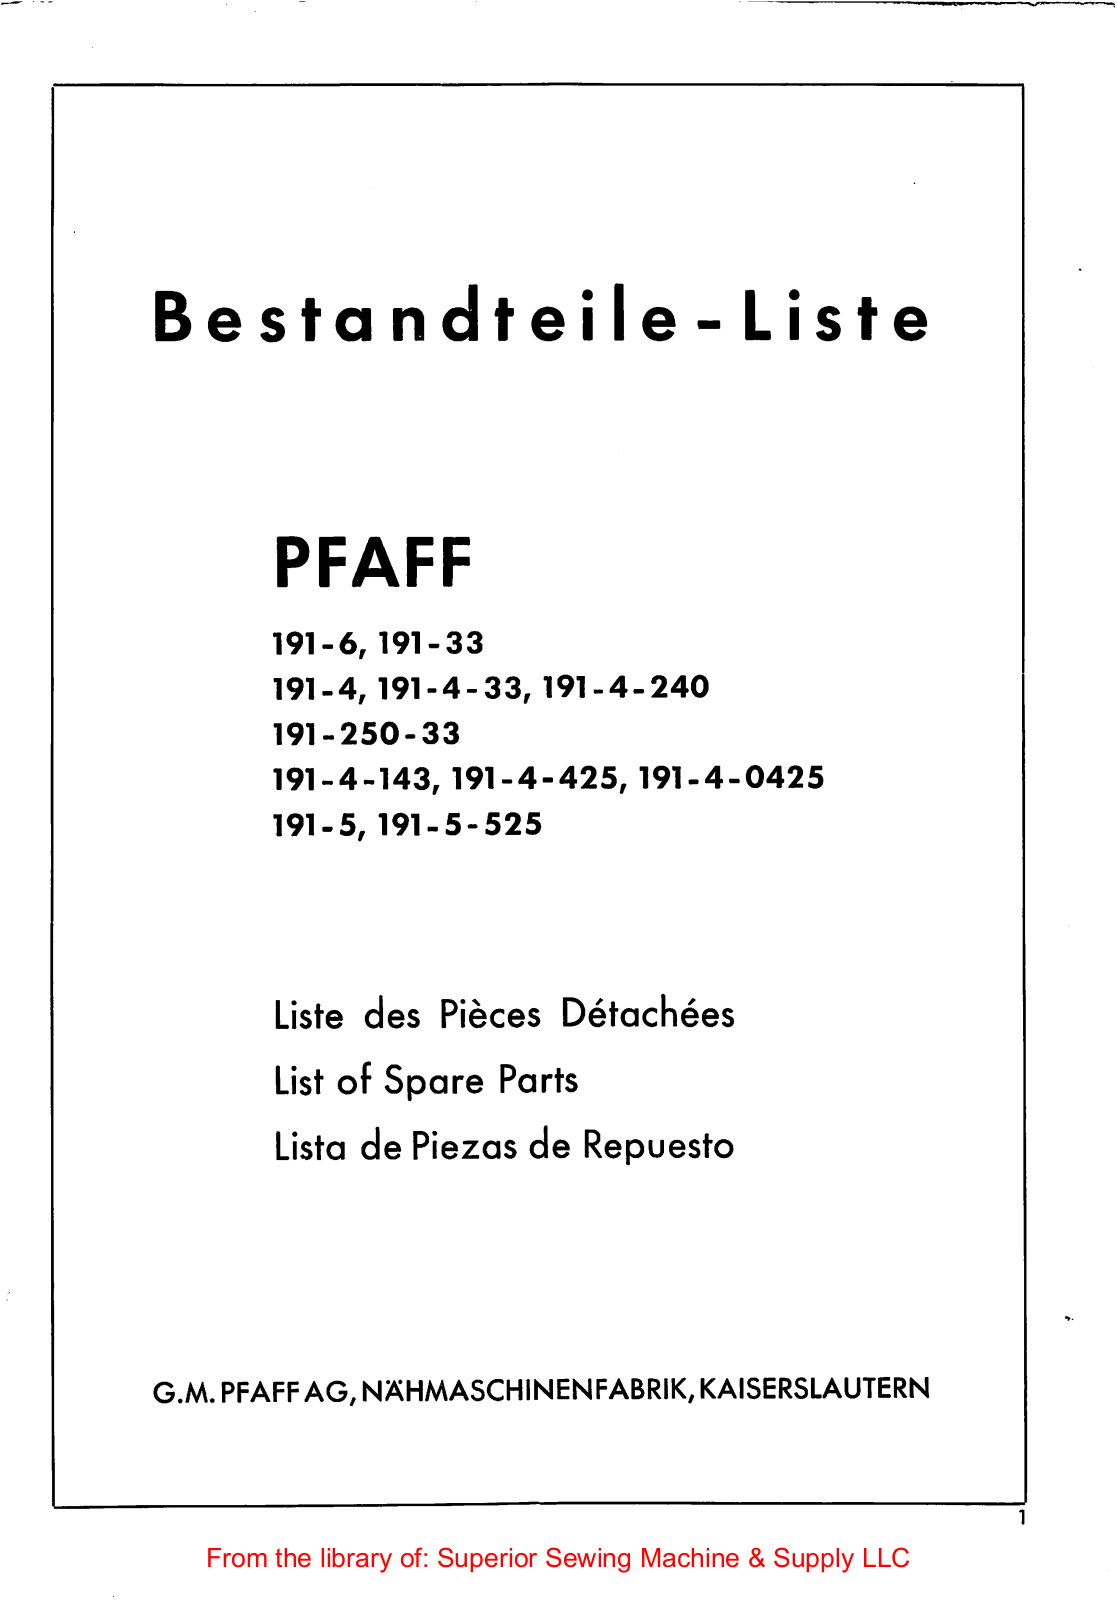 Pfaff 191-6, 191-33, 191-4, 191-250-33, 191-5 Manual